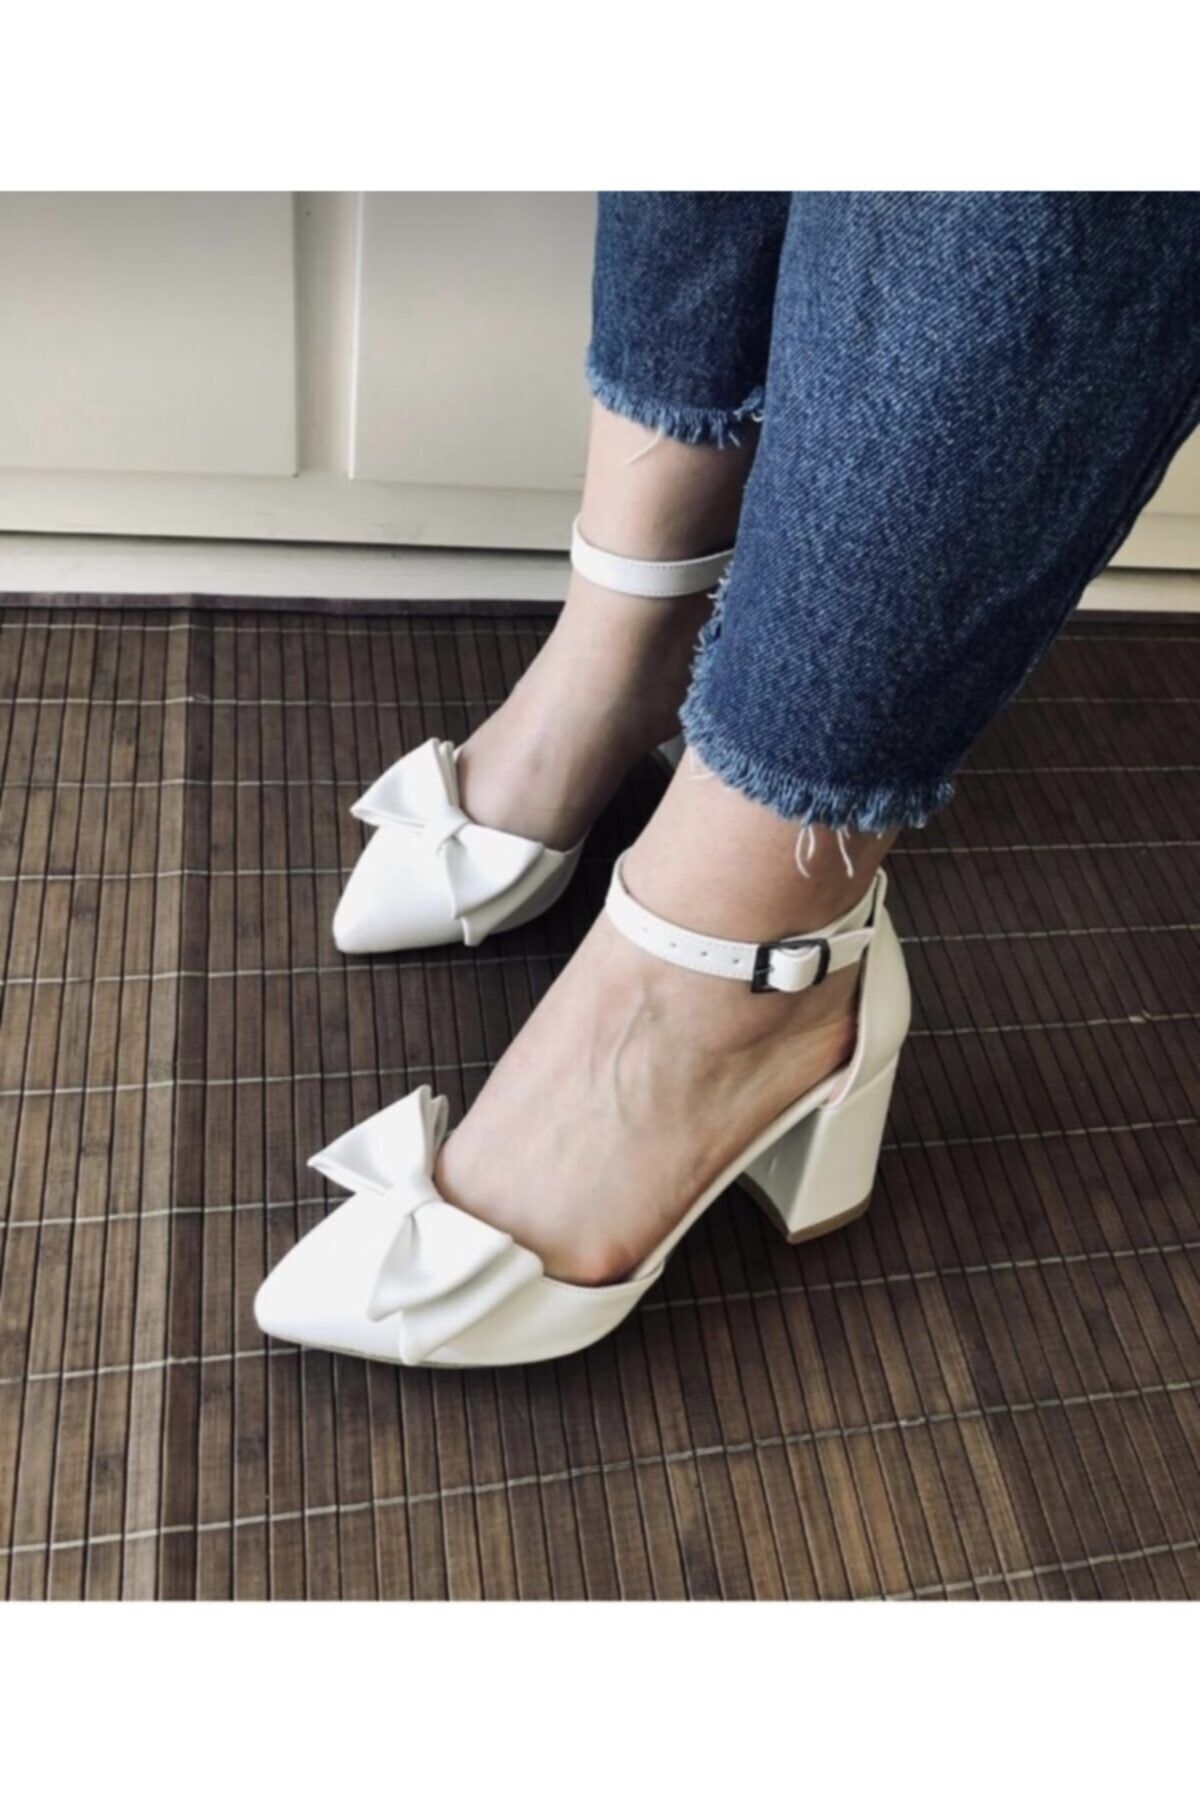 BY MAY SHOES Beyaz Topuklu Fiyonk Modellı Kadın Ayakkabısı